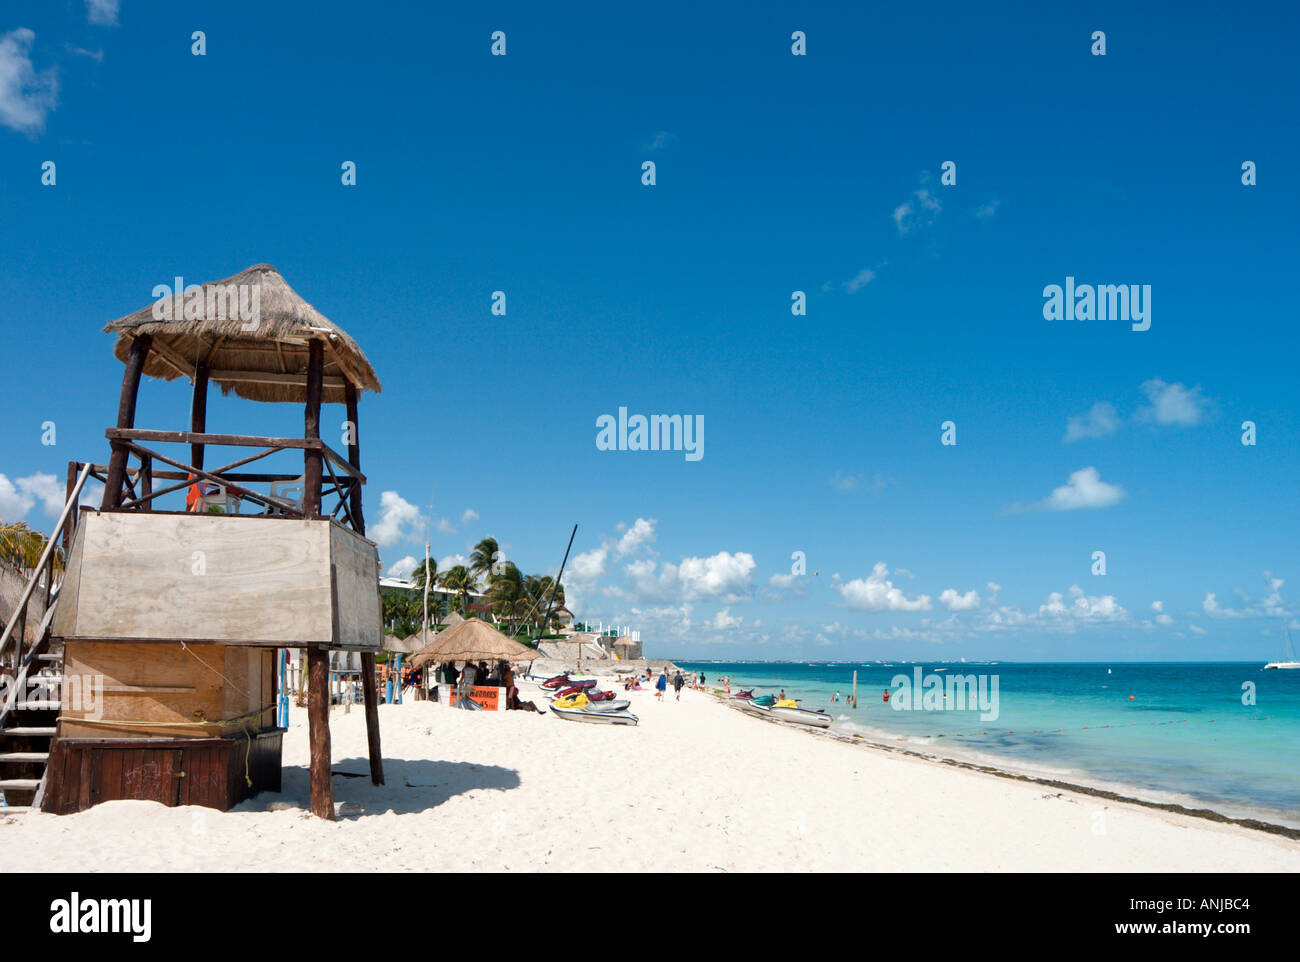 Plage Playa Tortugas, Cancun, péninsule du Yucatan, Mexique Banque D'Images